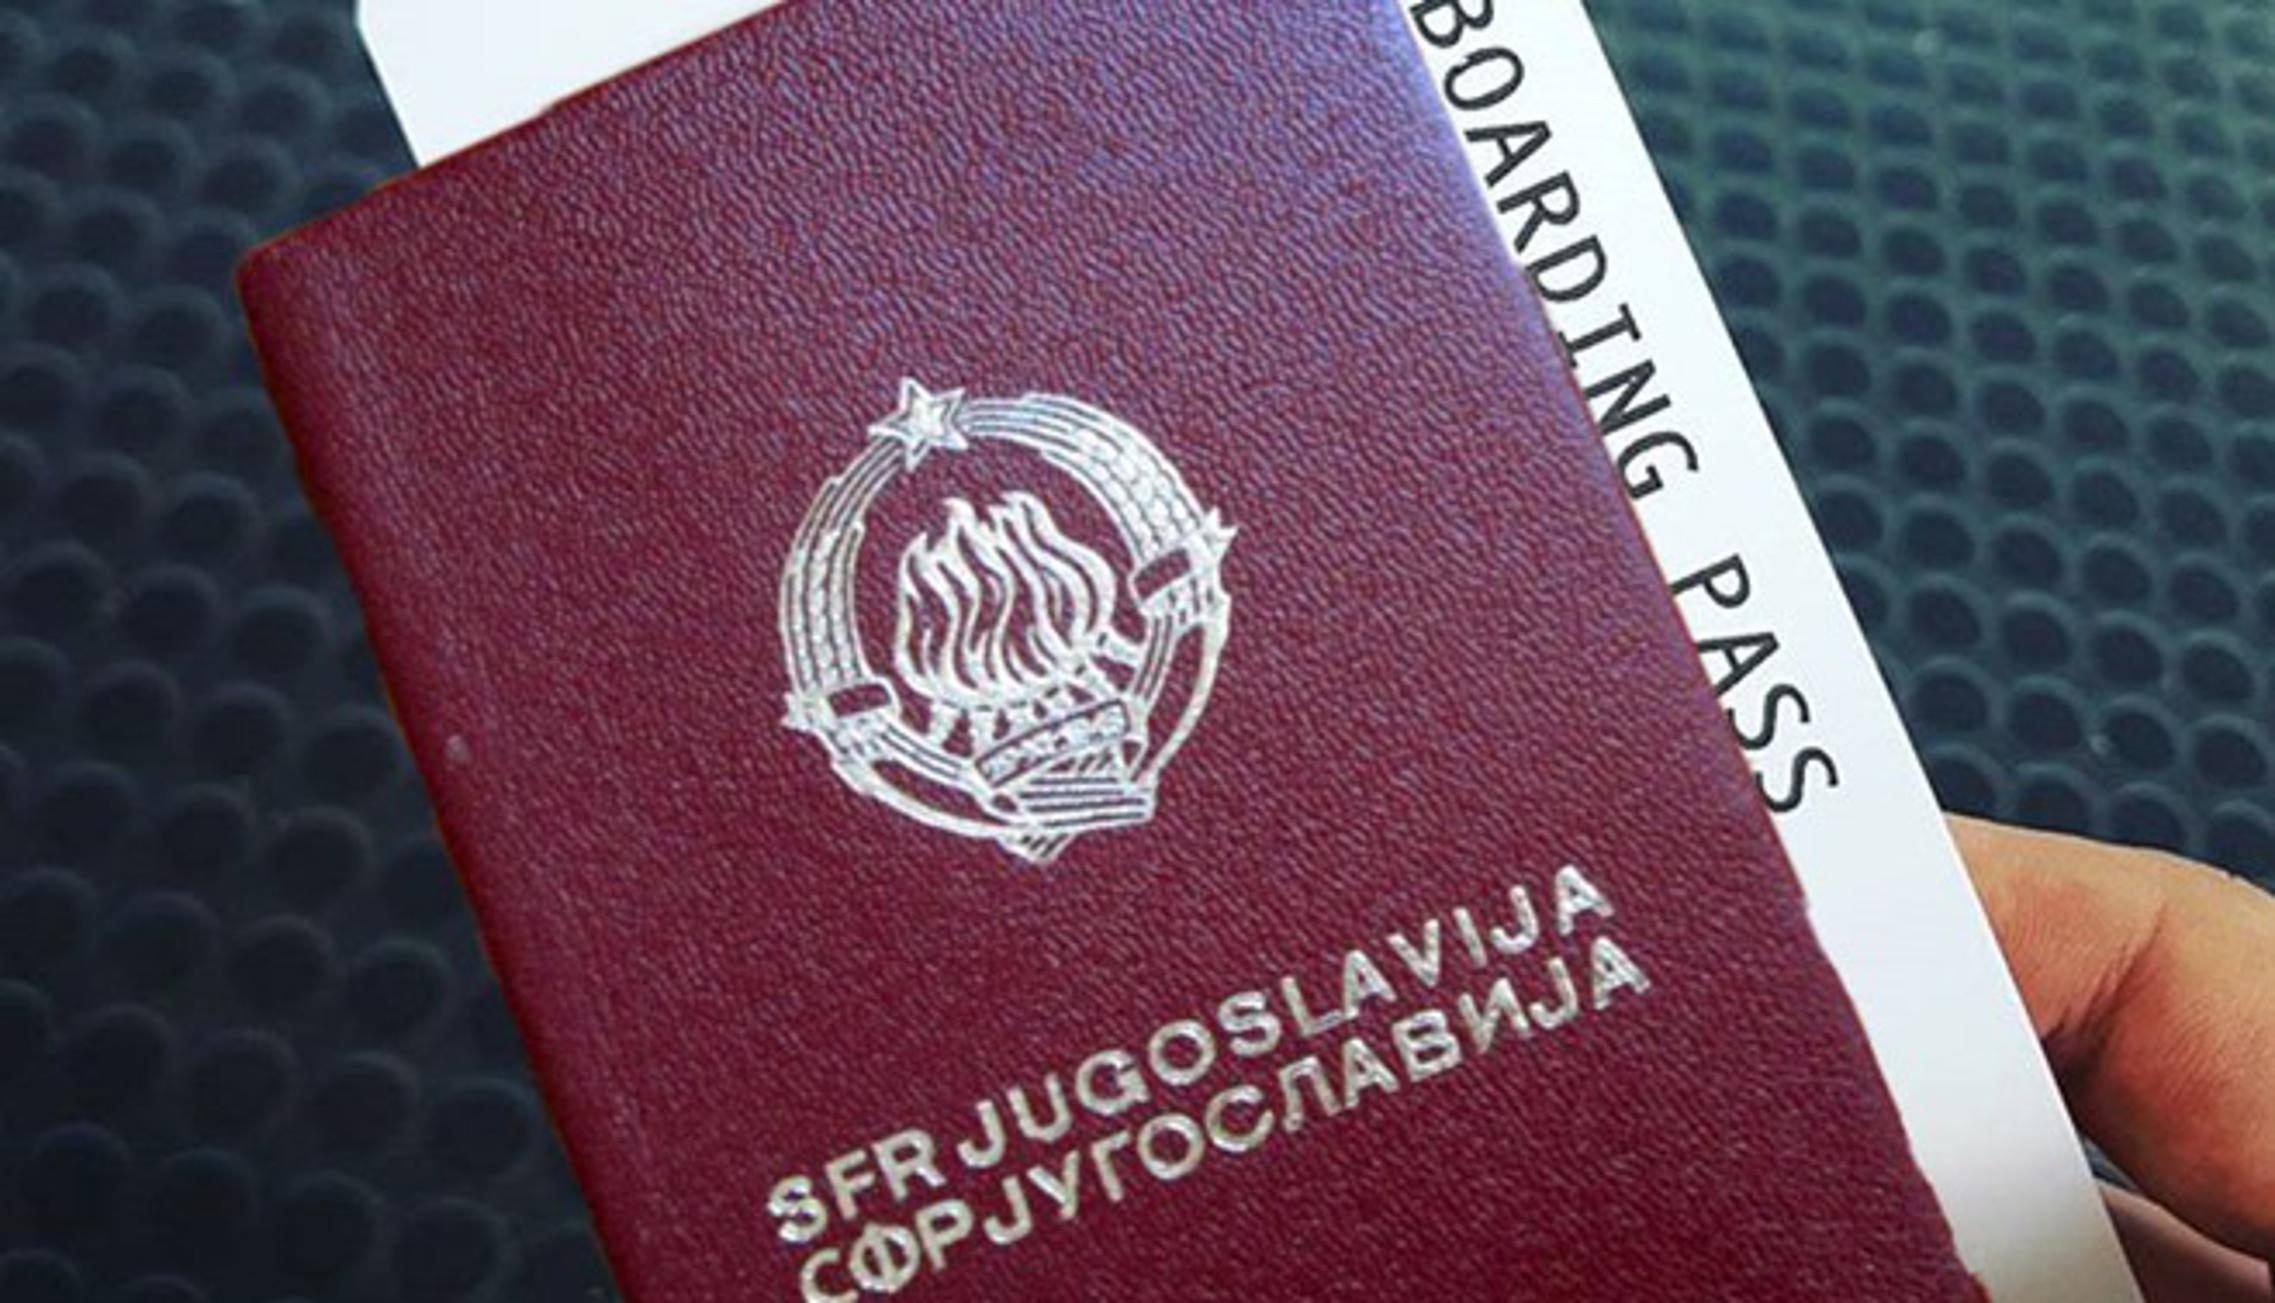 Crveni (jugo) pasoš. (Ilustracija)